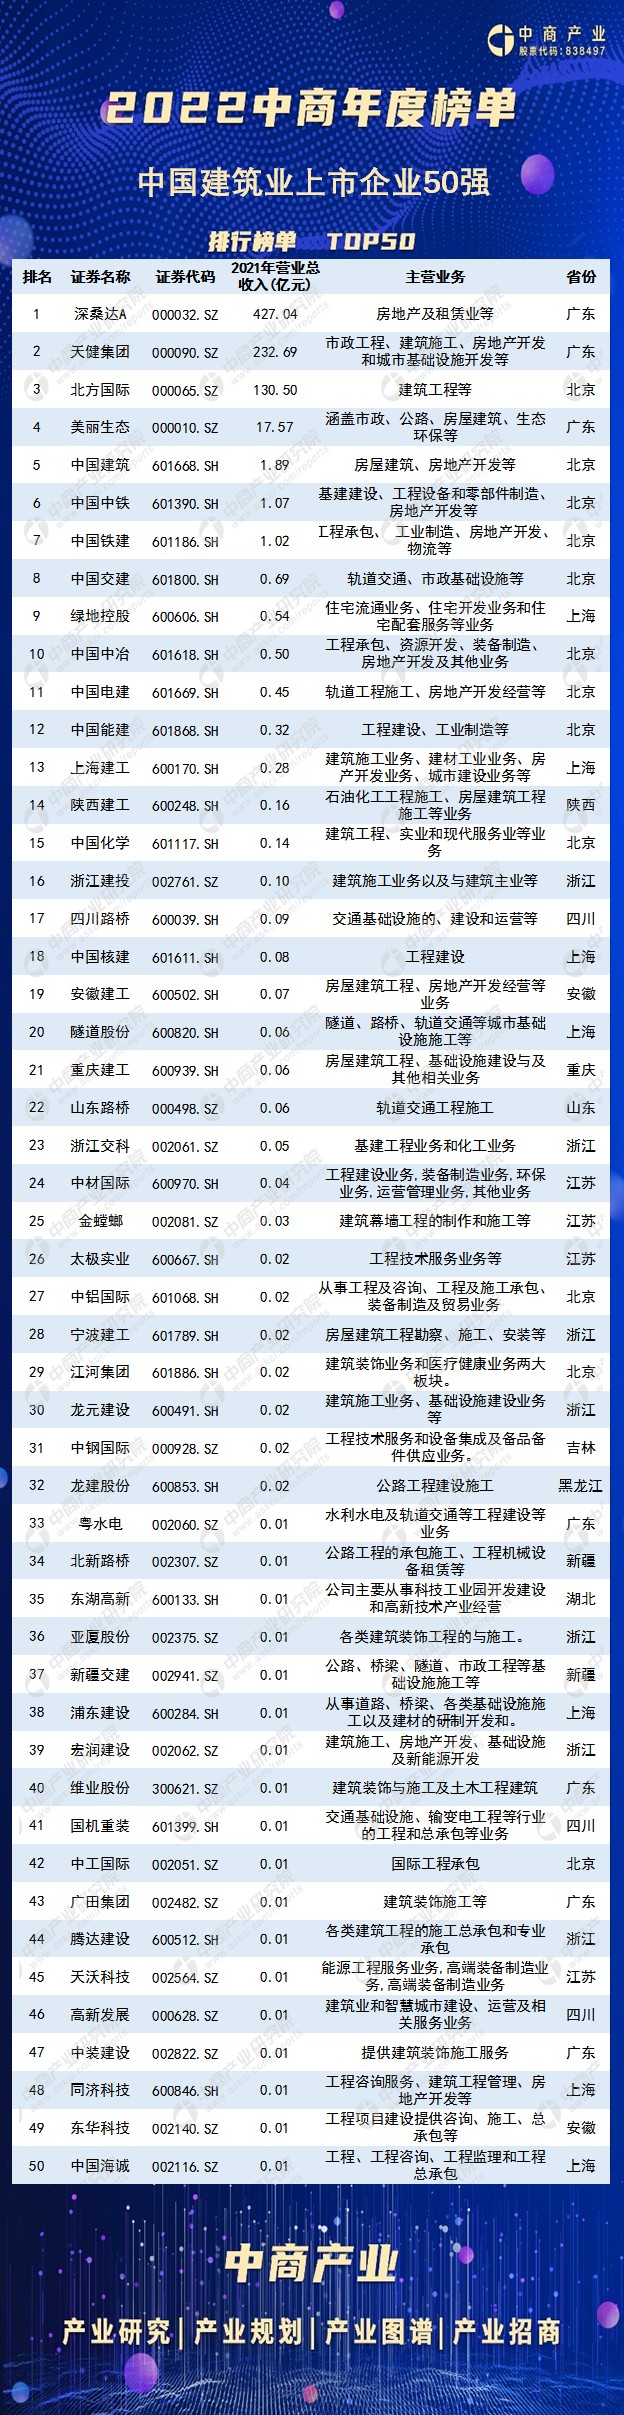 2021年中国建筑行业上市公司营业收入排行榜